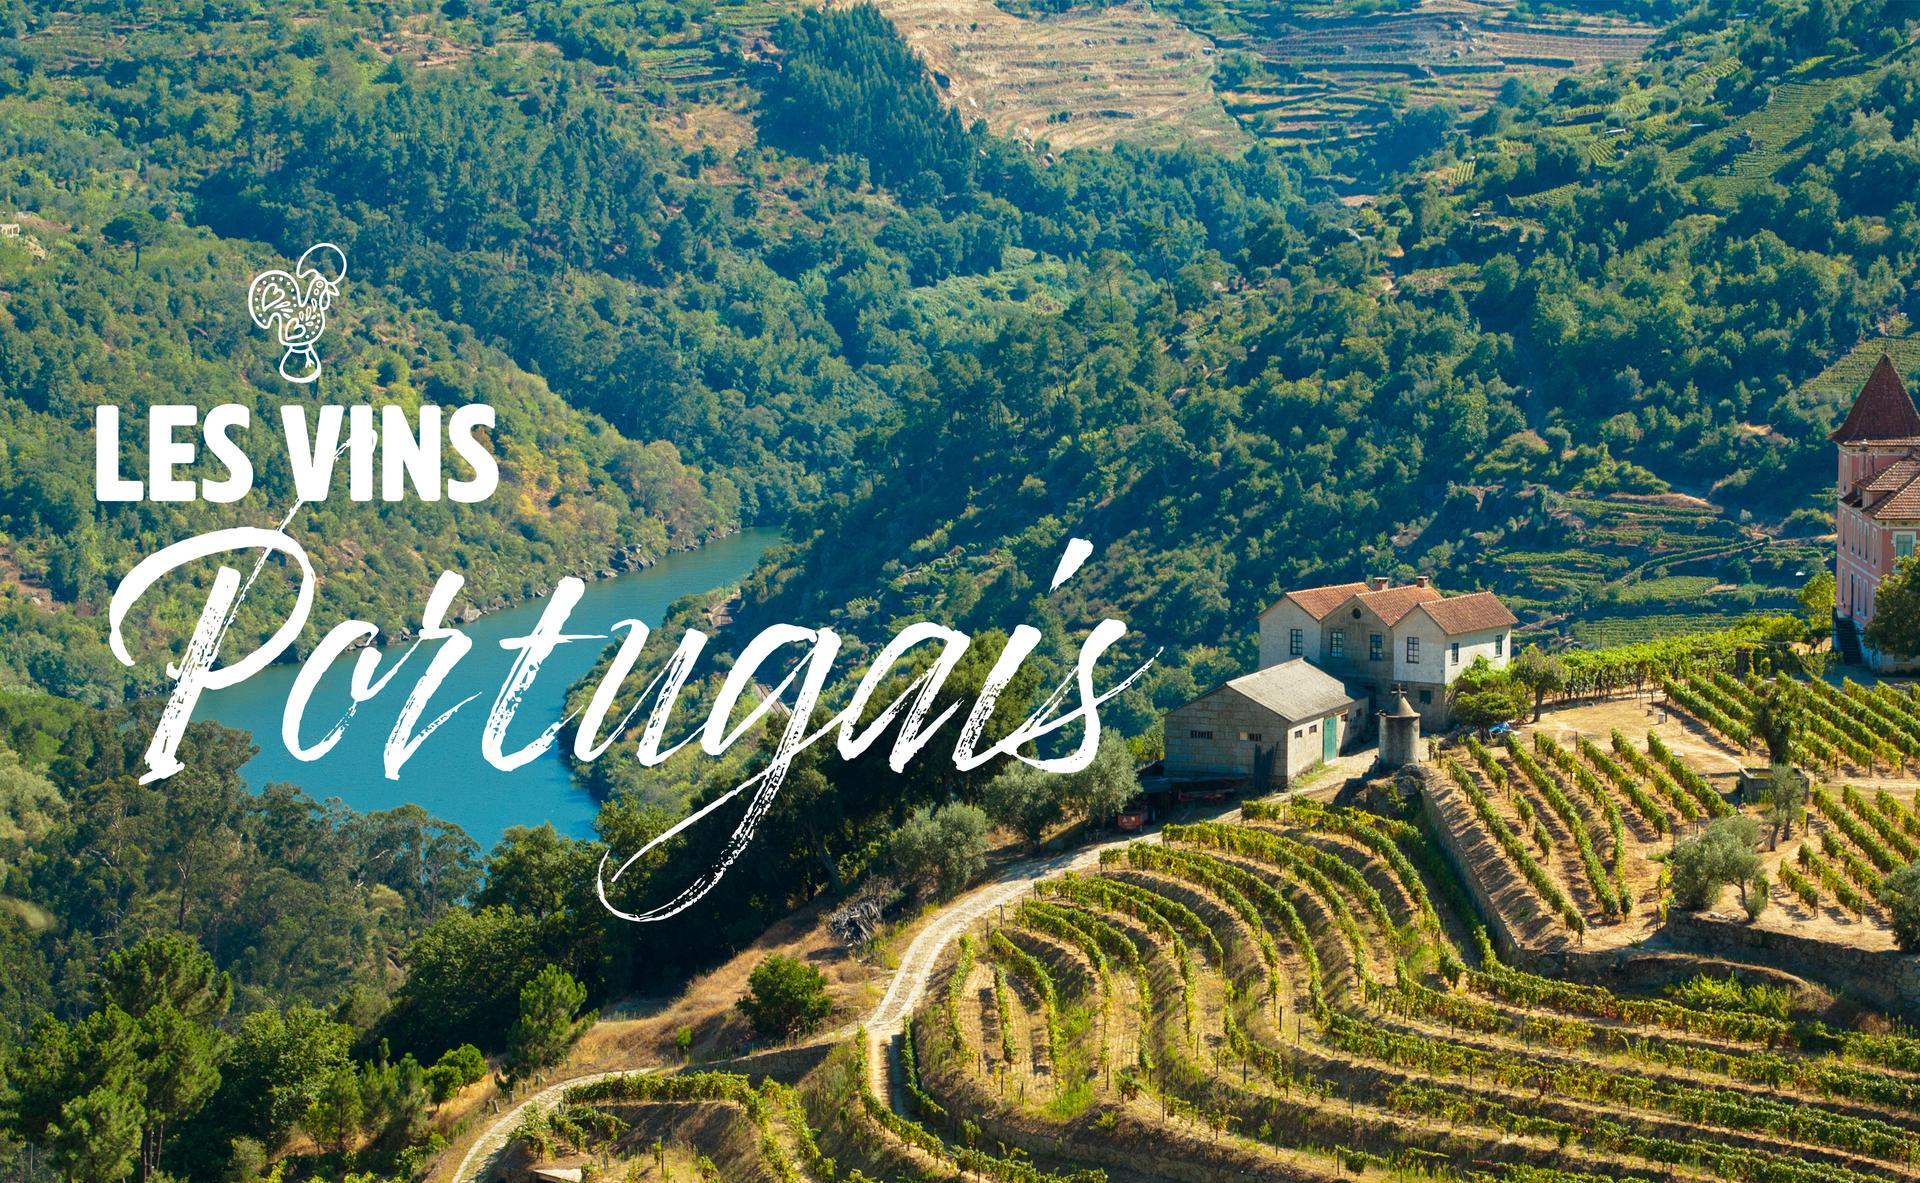 Les vins secs du Portugal : diversité, prix et qualité